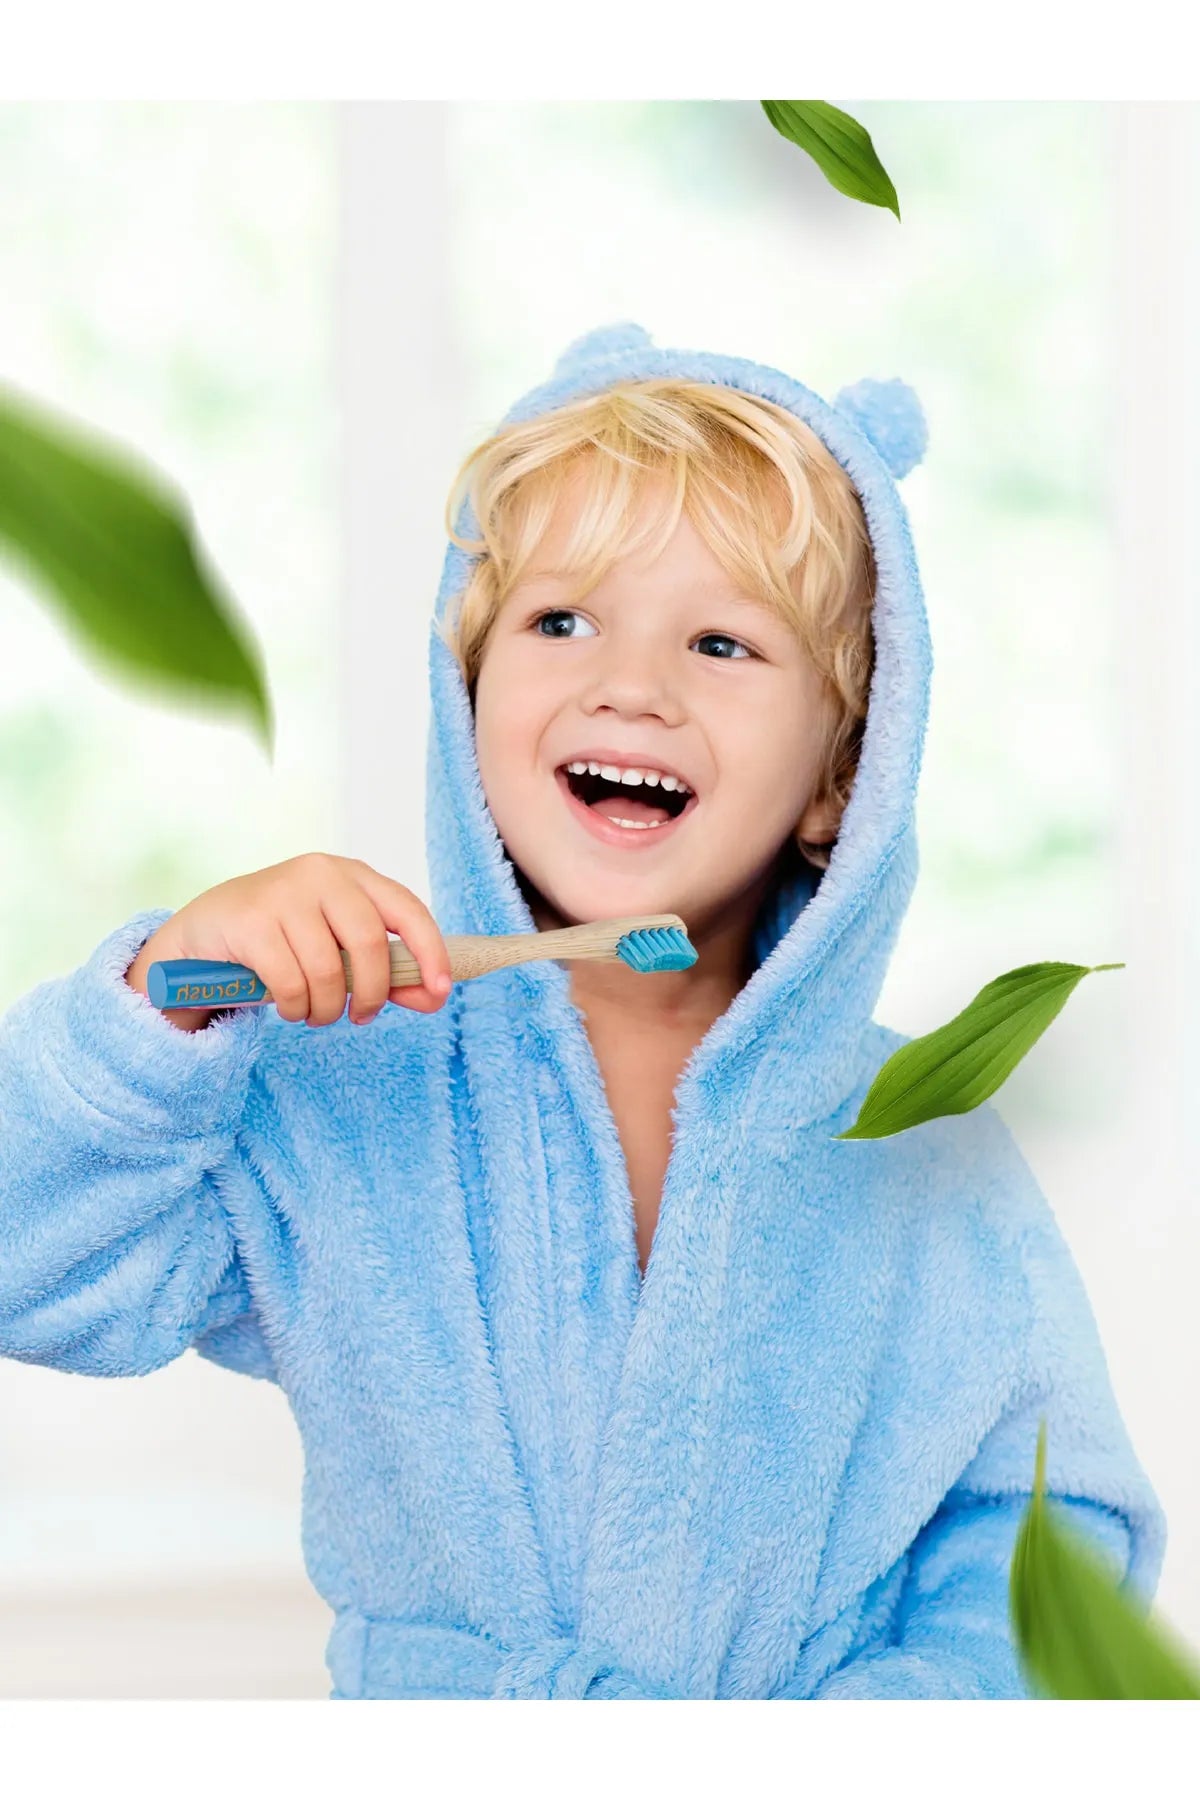 T-Brush Bambu Çocuk Yumuşak Diş Fırçası - Mavi